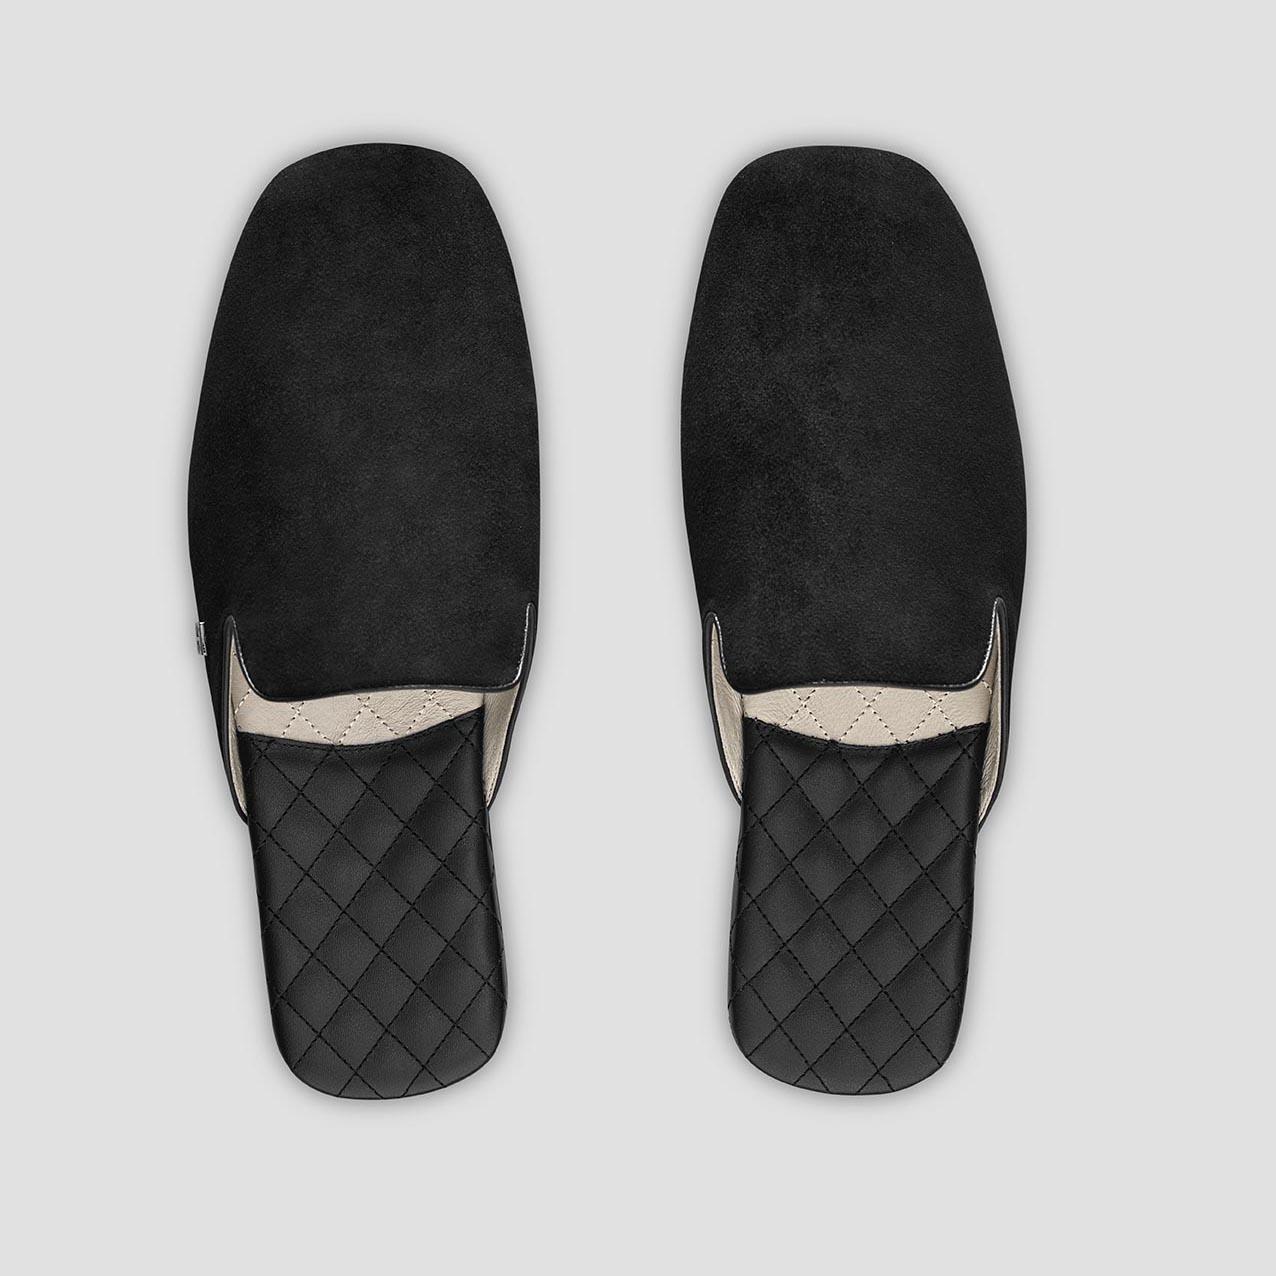 Тапочки Togas Реон черные мужские кожаные, размер 46-47 реснички набор 2 шт размер 1 шт 20 × 1 см чёрный